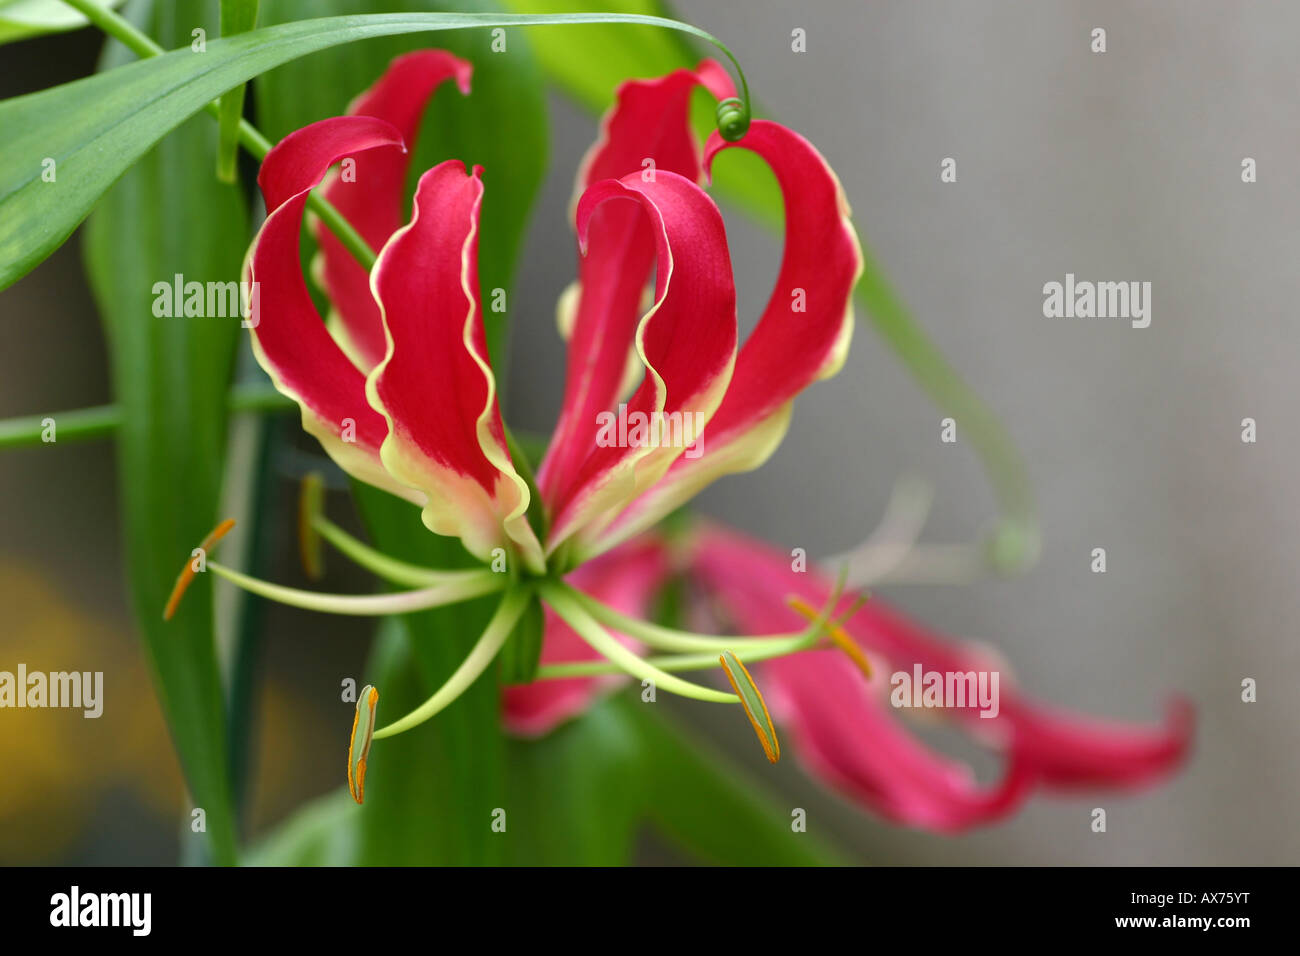 Gloriosa superba flame lily Stock Photo